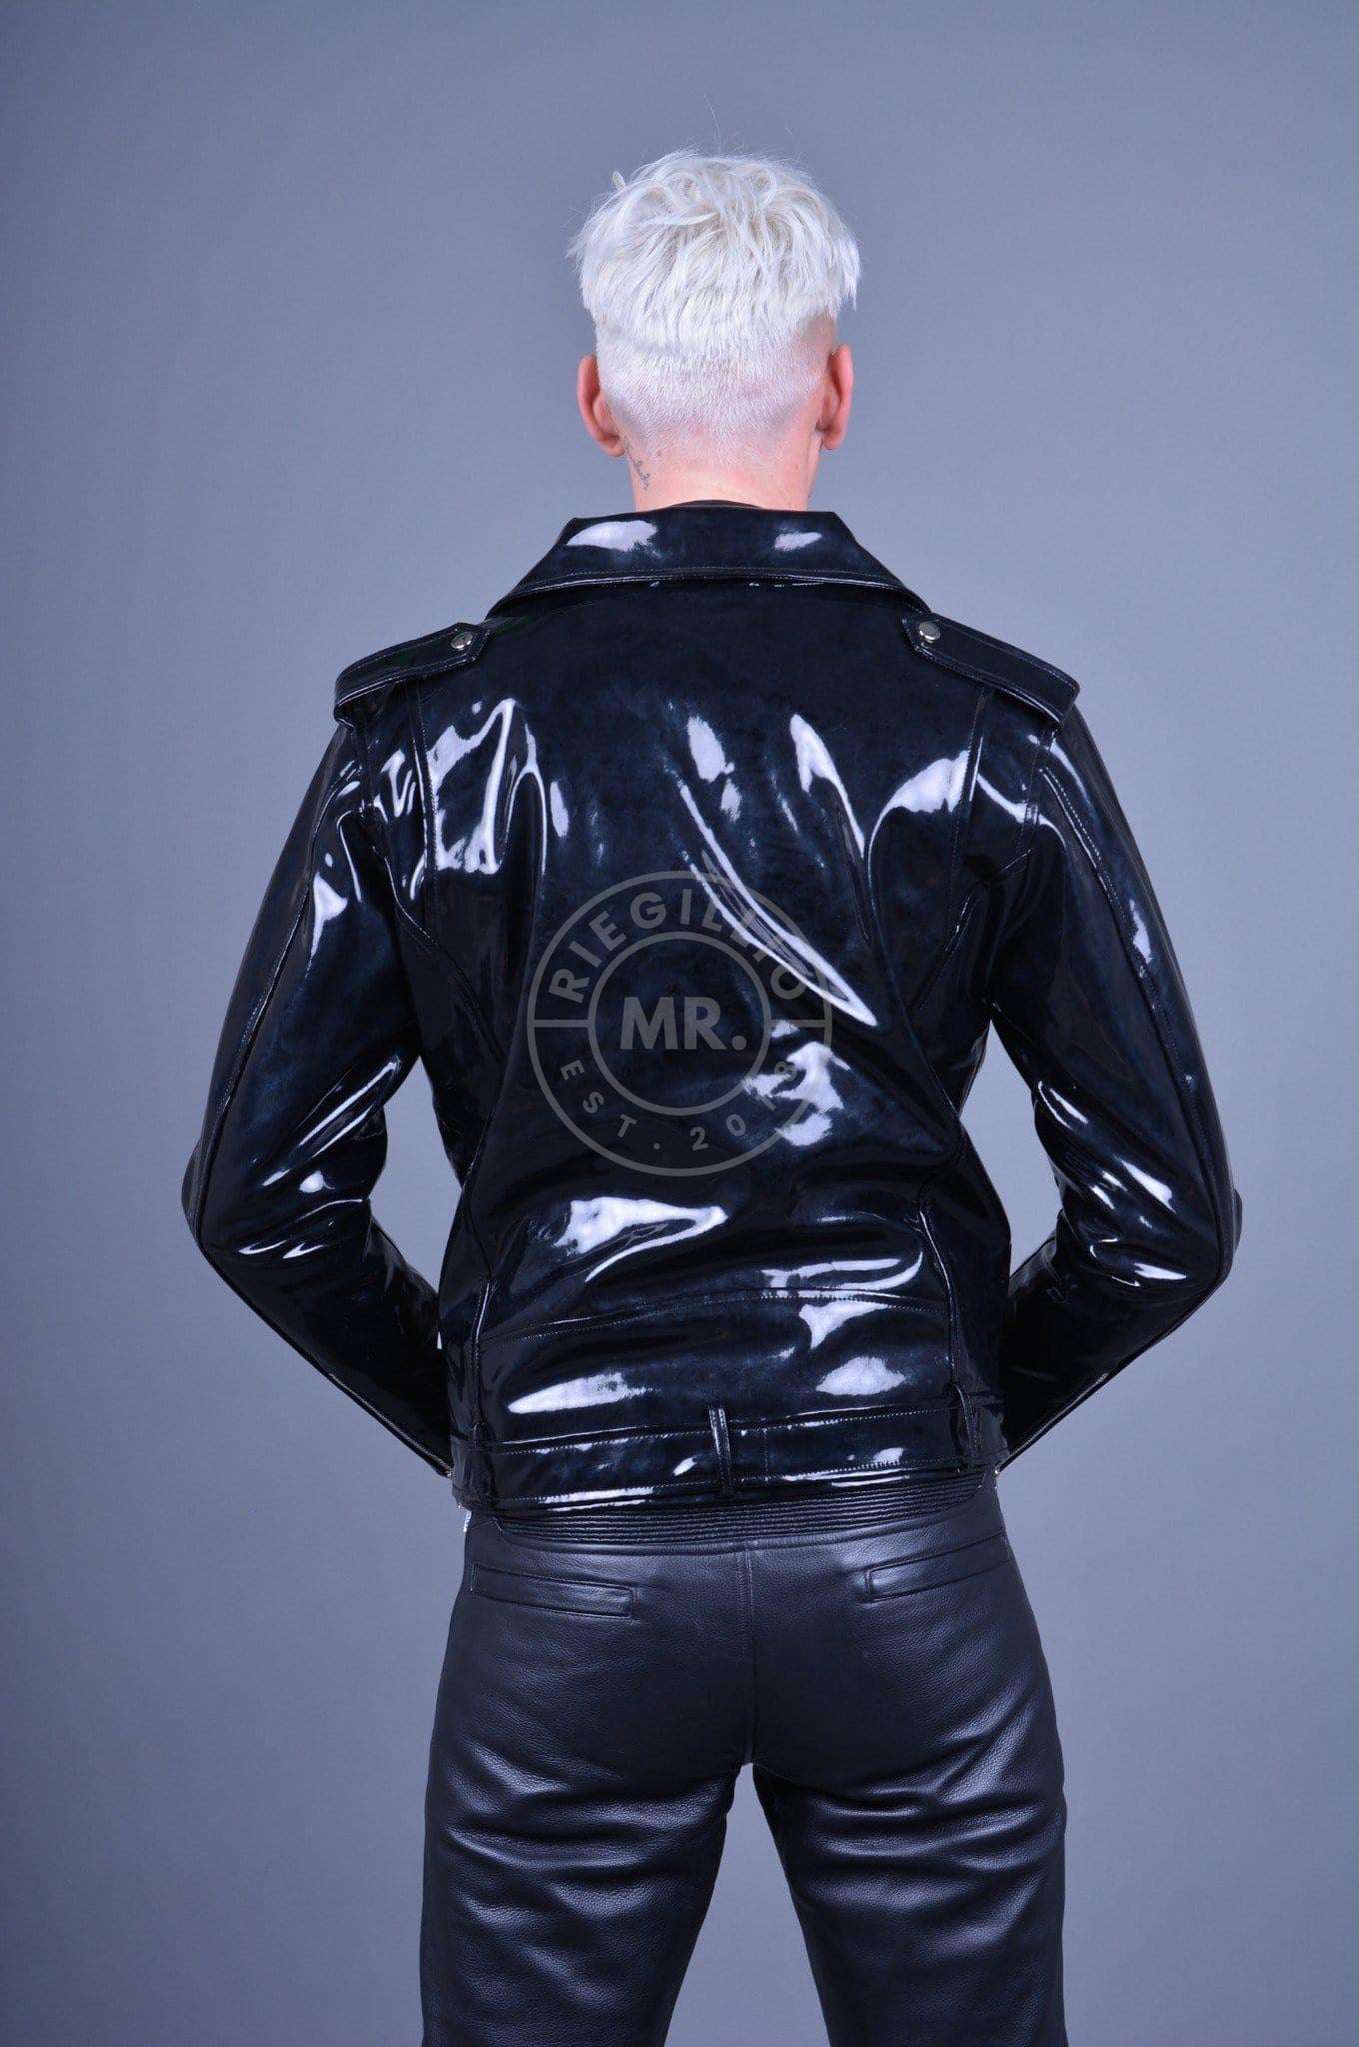 Black PVC Brando Jacket at MR. Riegillio